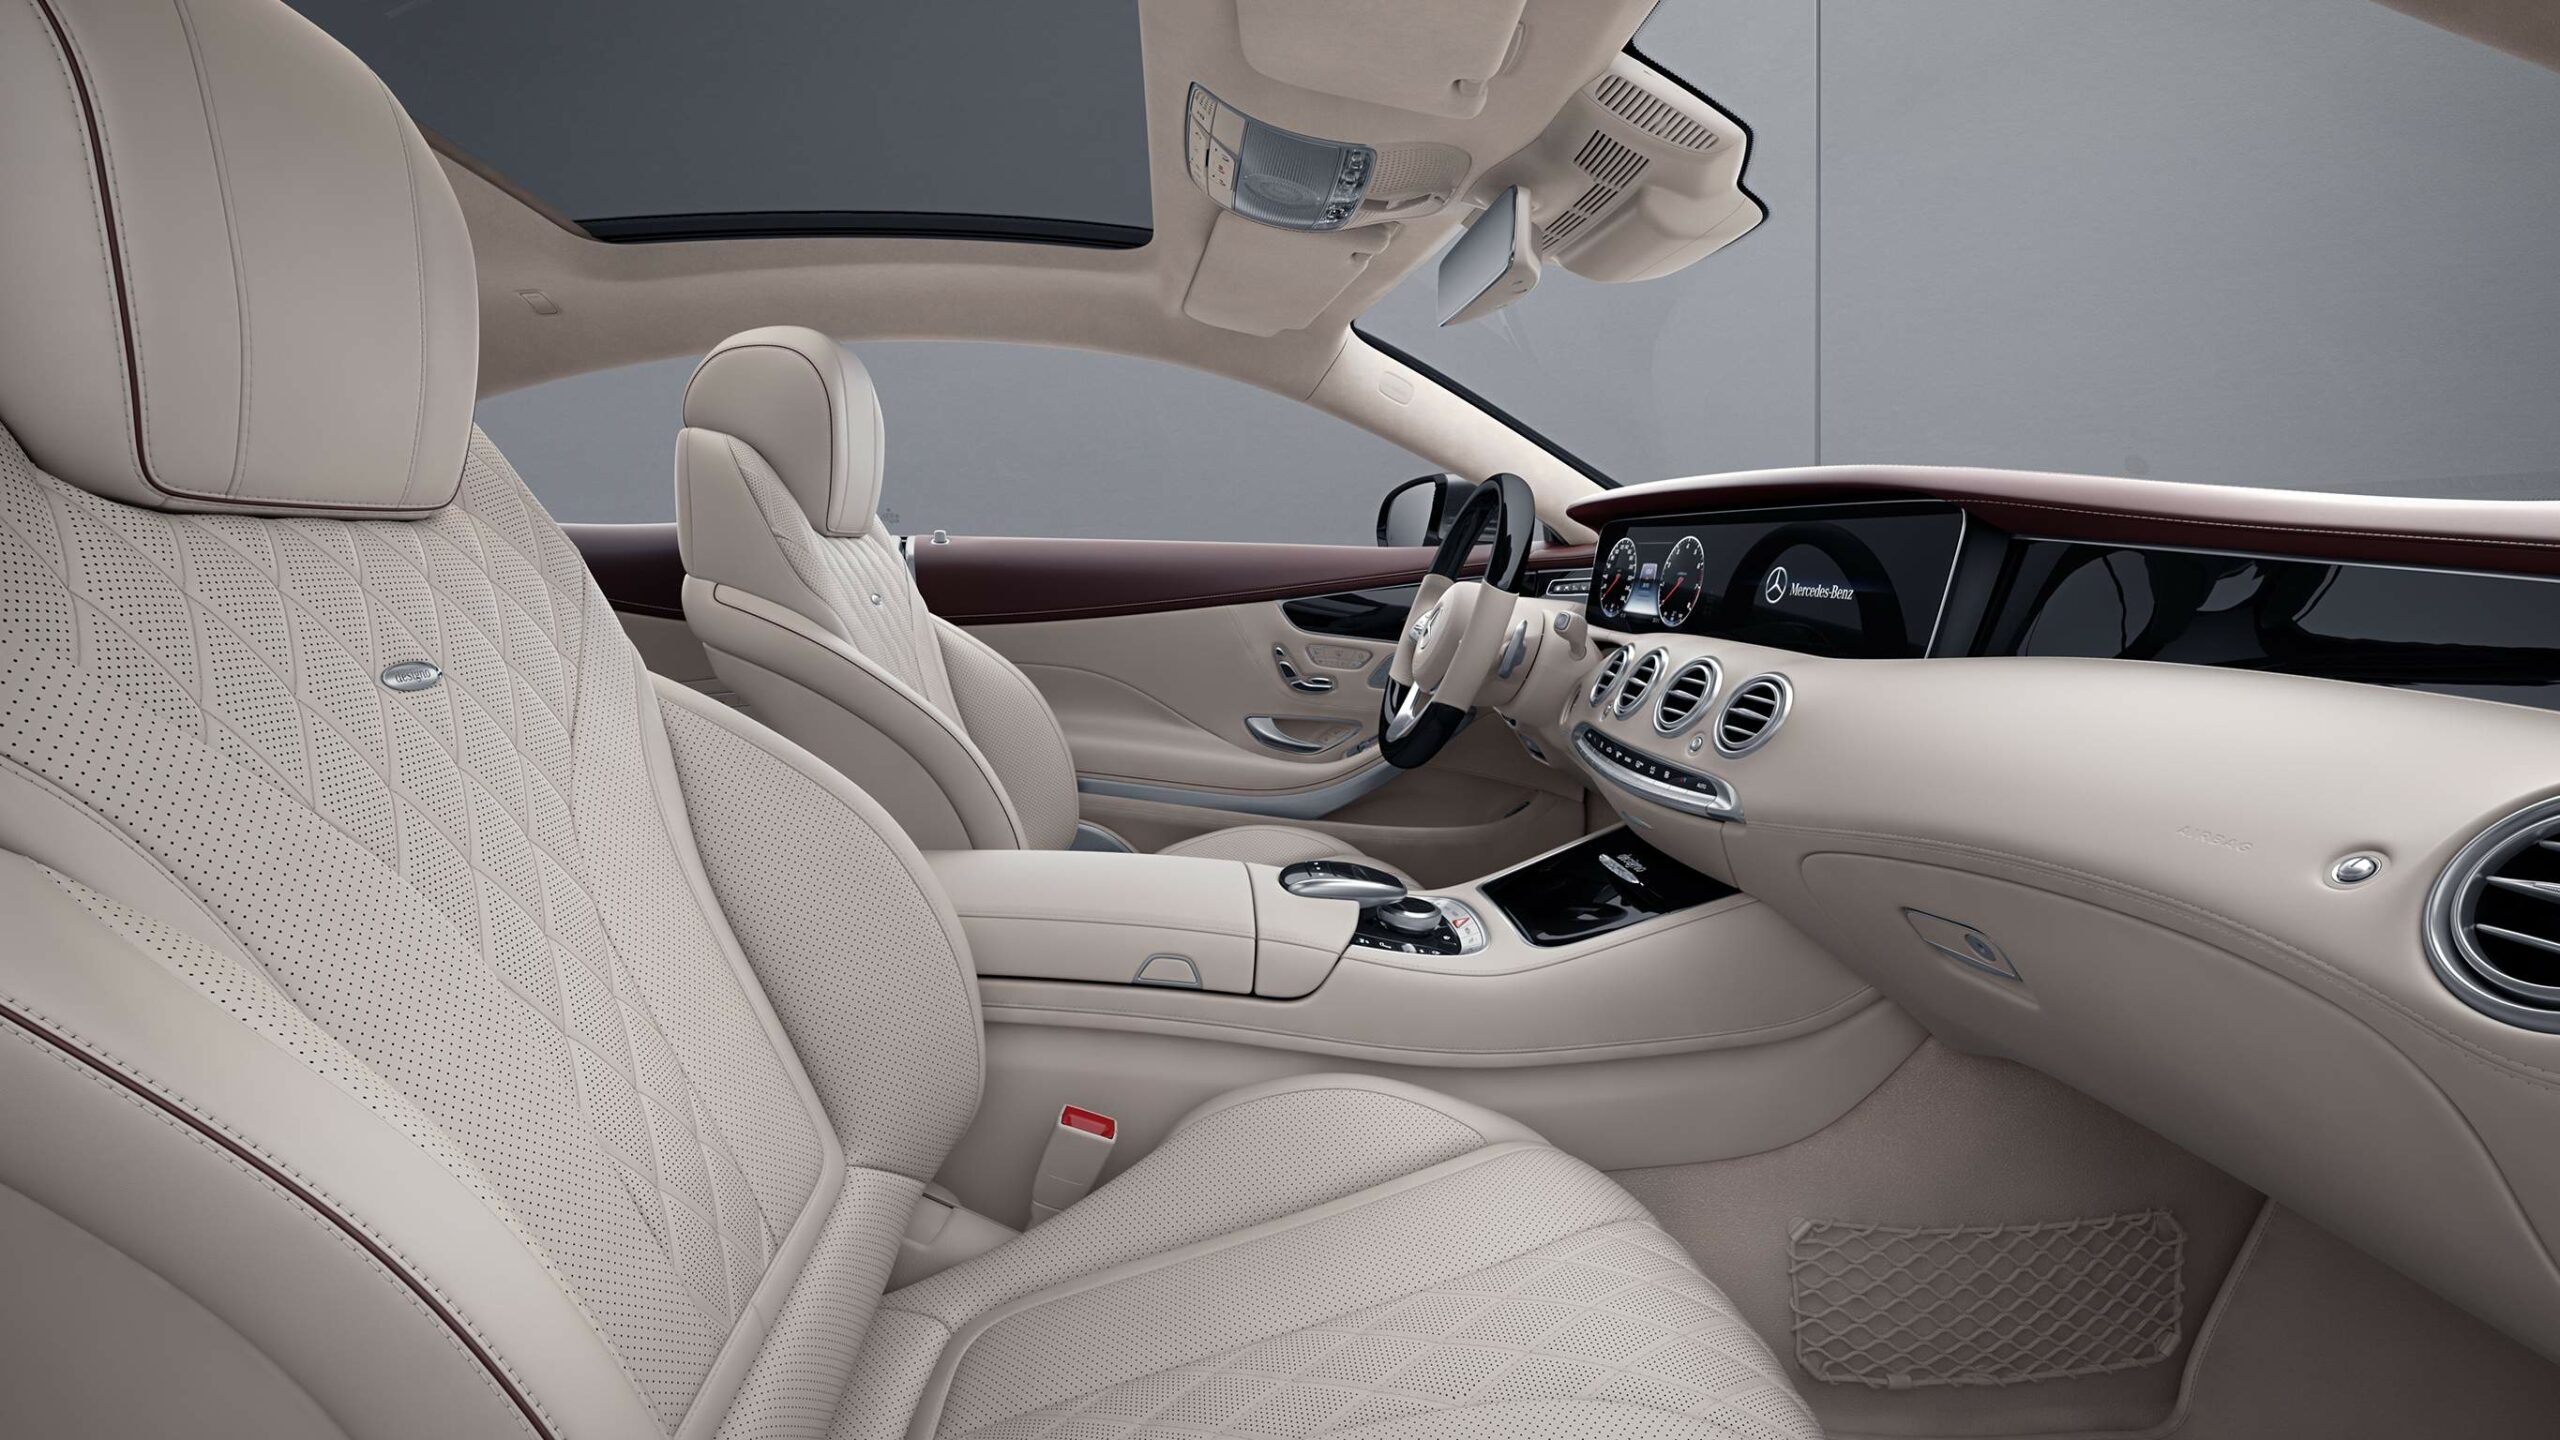 Interior rustico dentro de la Clase S Coupe de Mercedes-Benz